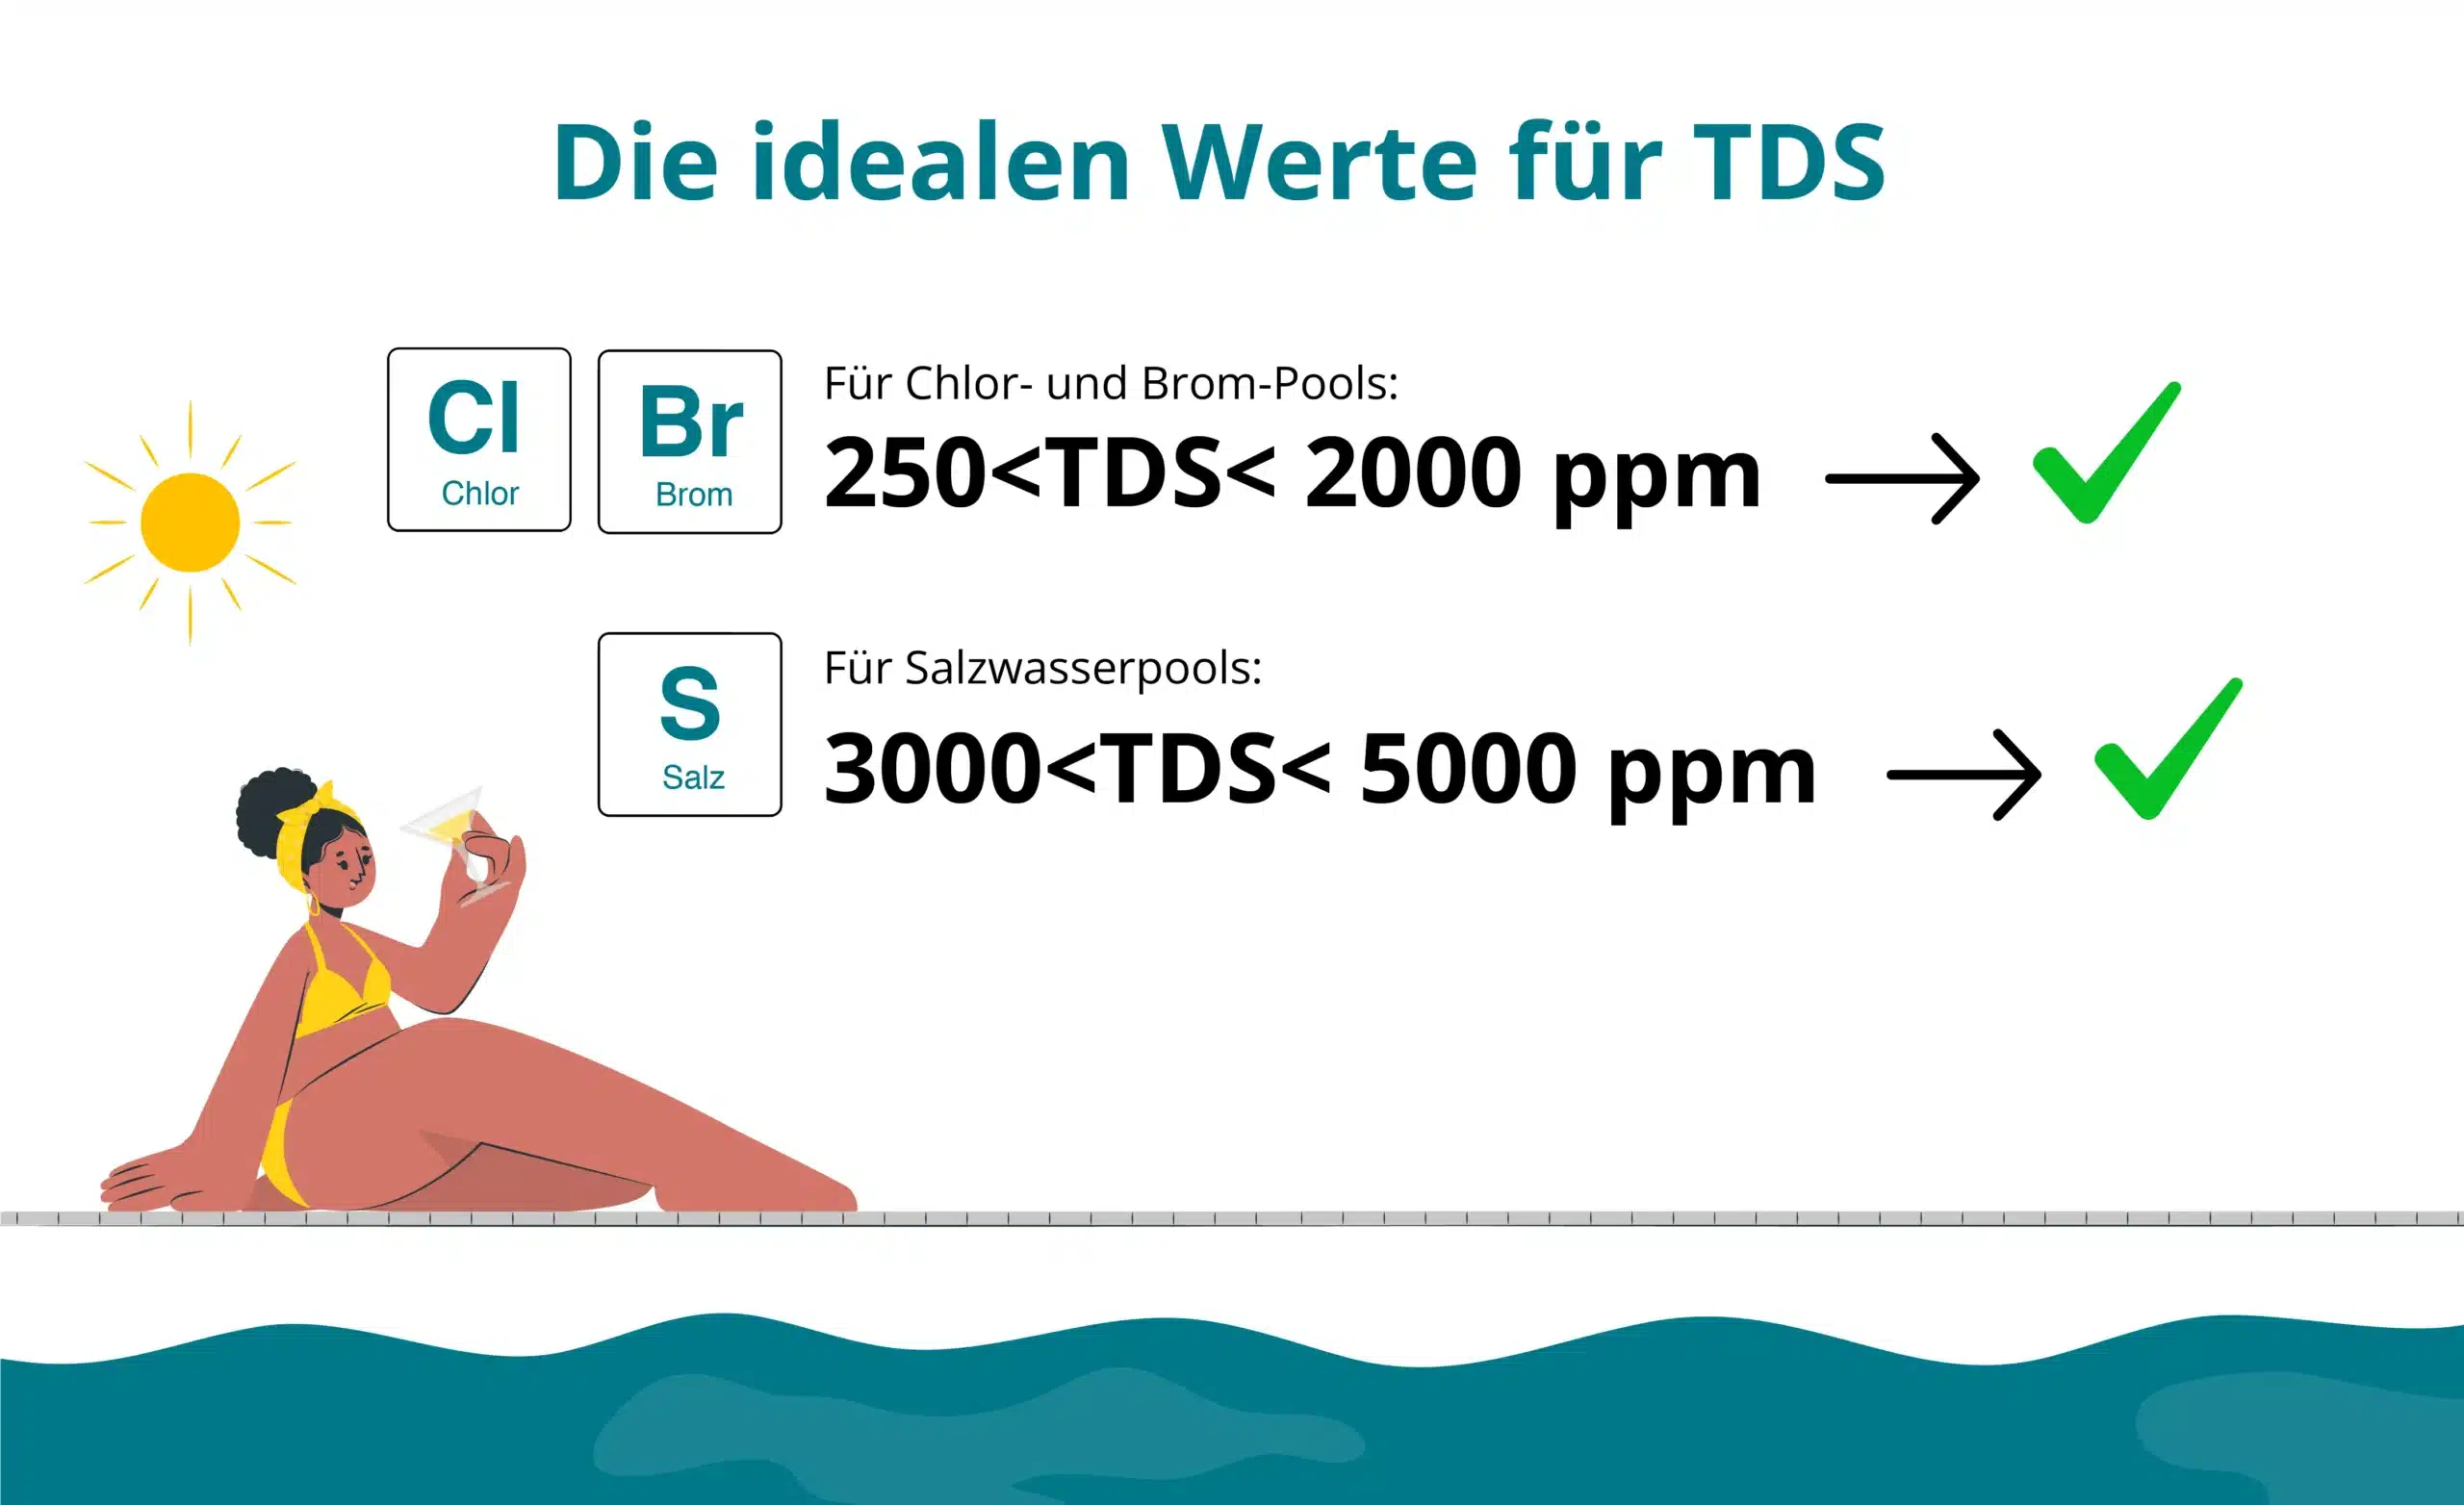 Abbildung mit idealen TDS-Werten für Swimmingpools und Whirlpools, je nachdem, ob sie mit Chlor/Brom oder Salz behandelt werden. 